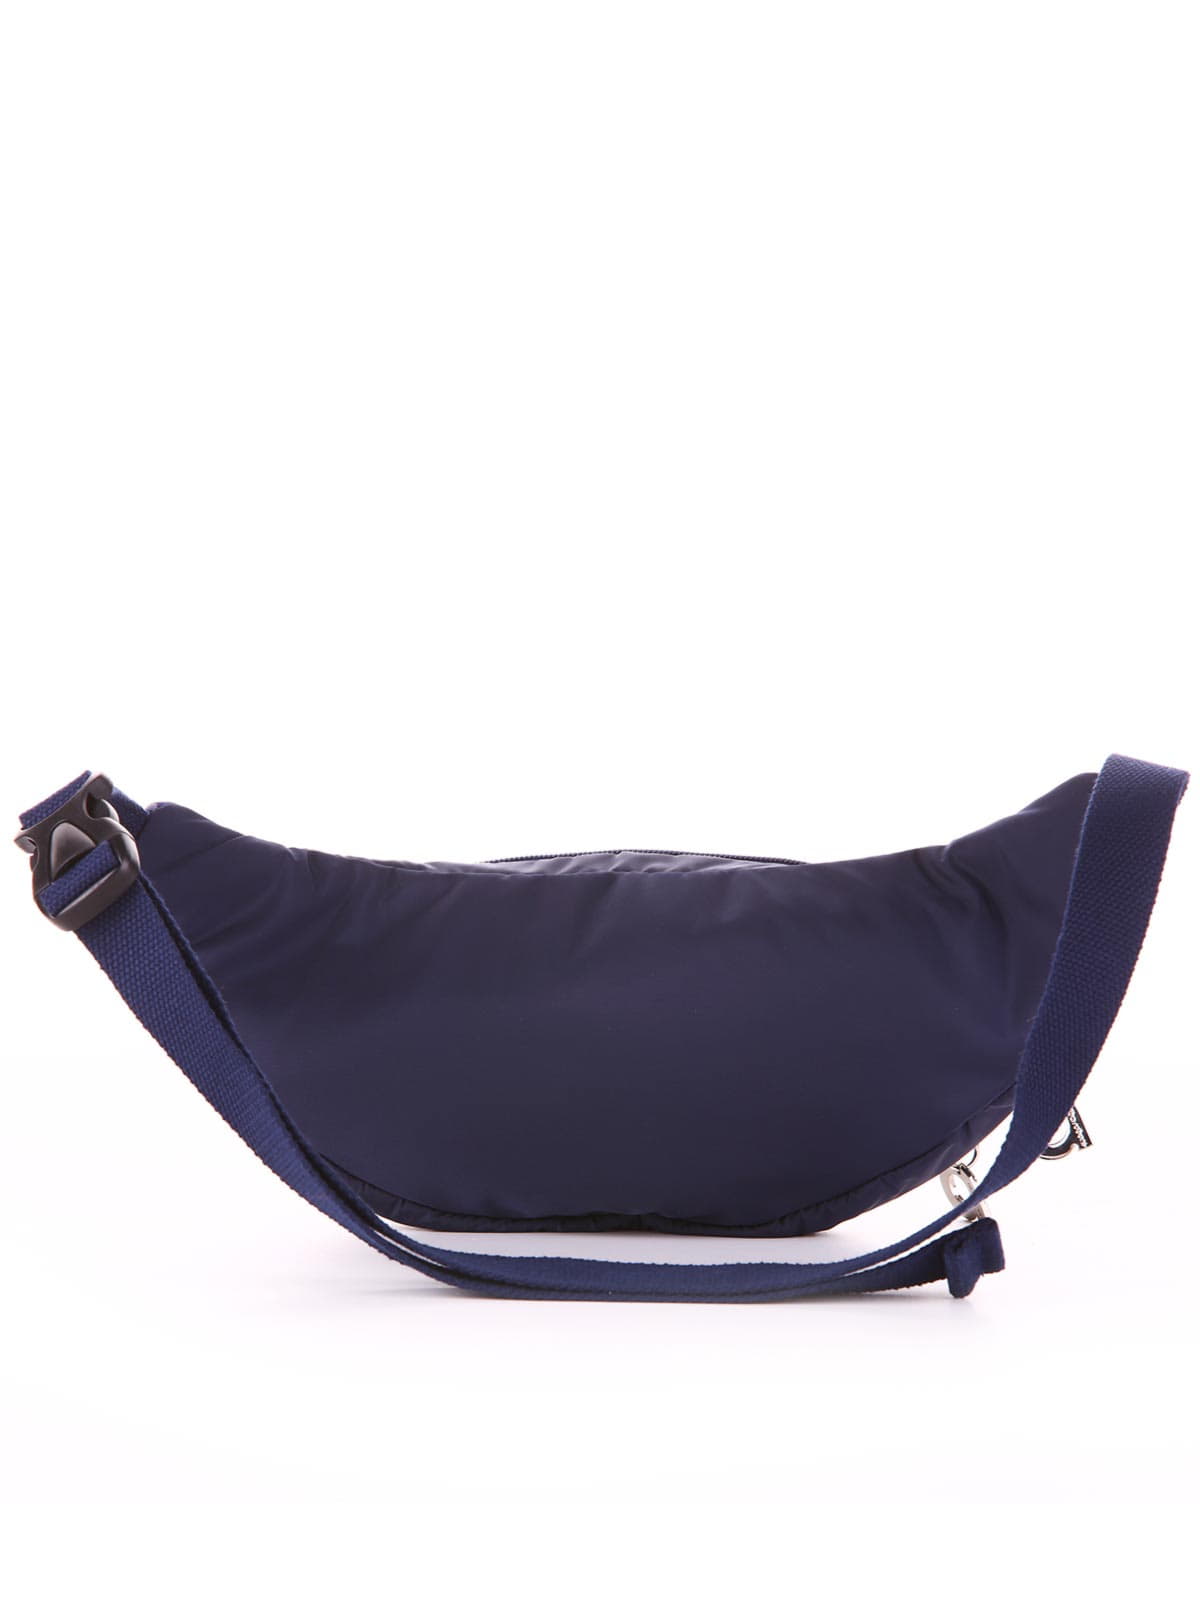 Модна сумка на пояс з вышивкою, модель 183882 синій. Зображення товару, вид додатковий.